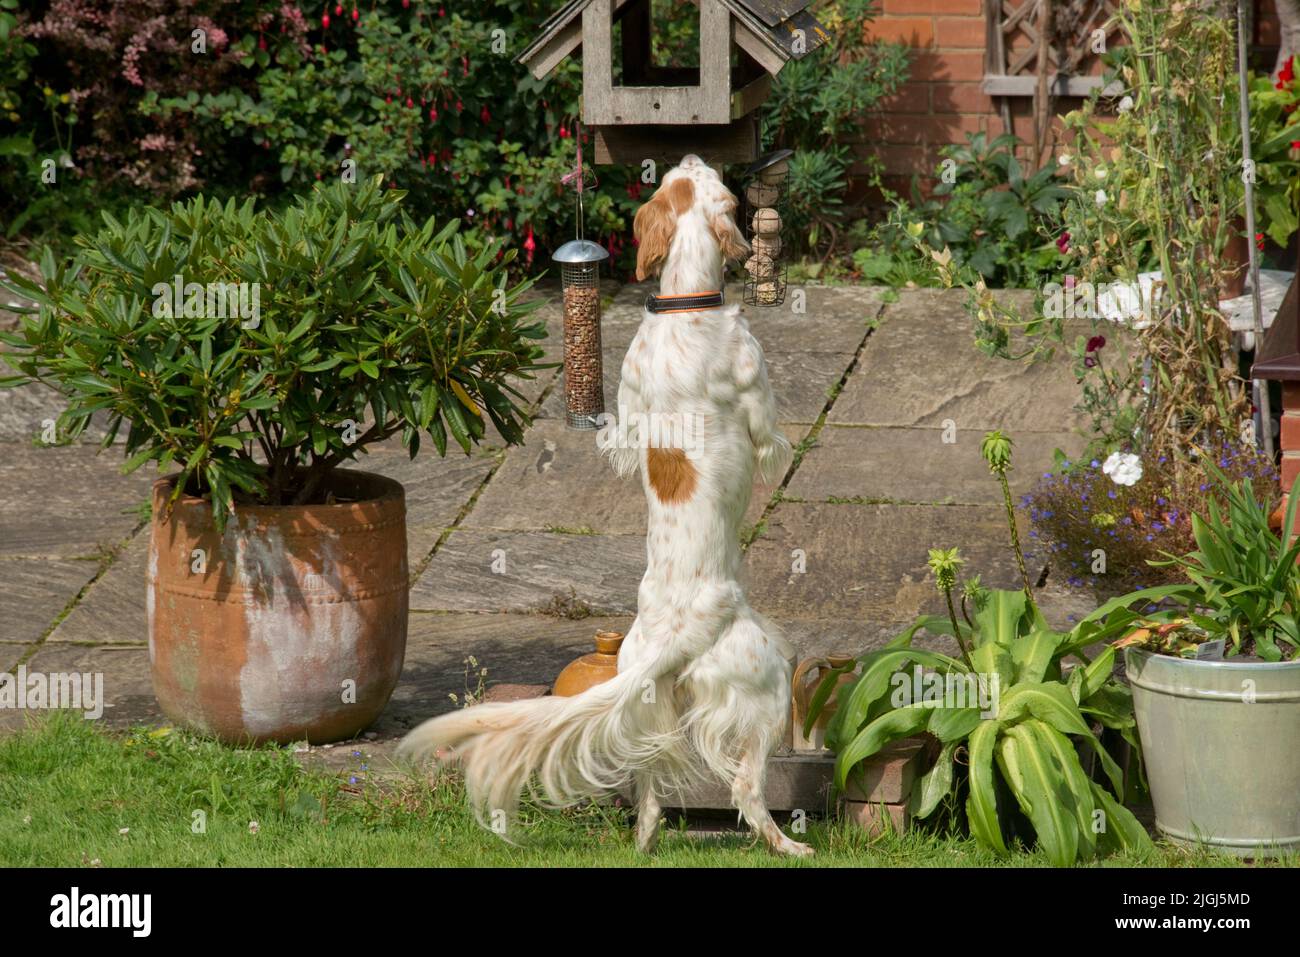 Perro setter inglés parado en sus piernas traseras mirando en una tabla de alimentación de pájaros con la cola larga swishing, Berkshire, agosto Foto de stock